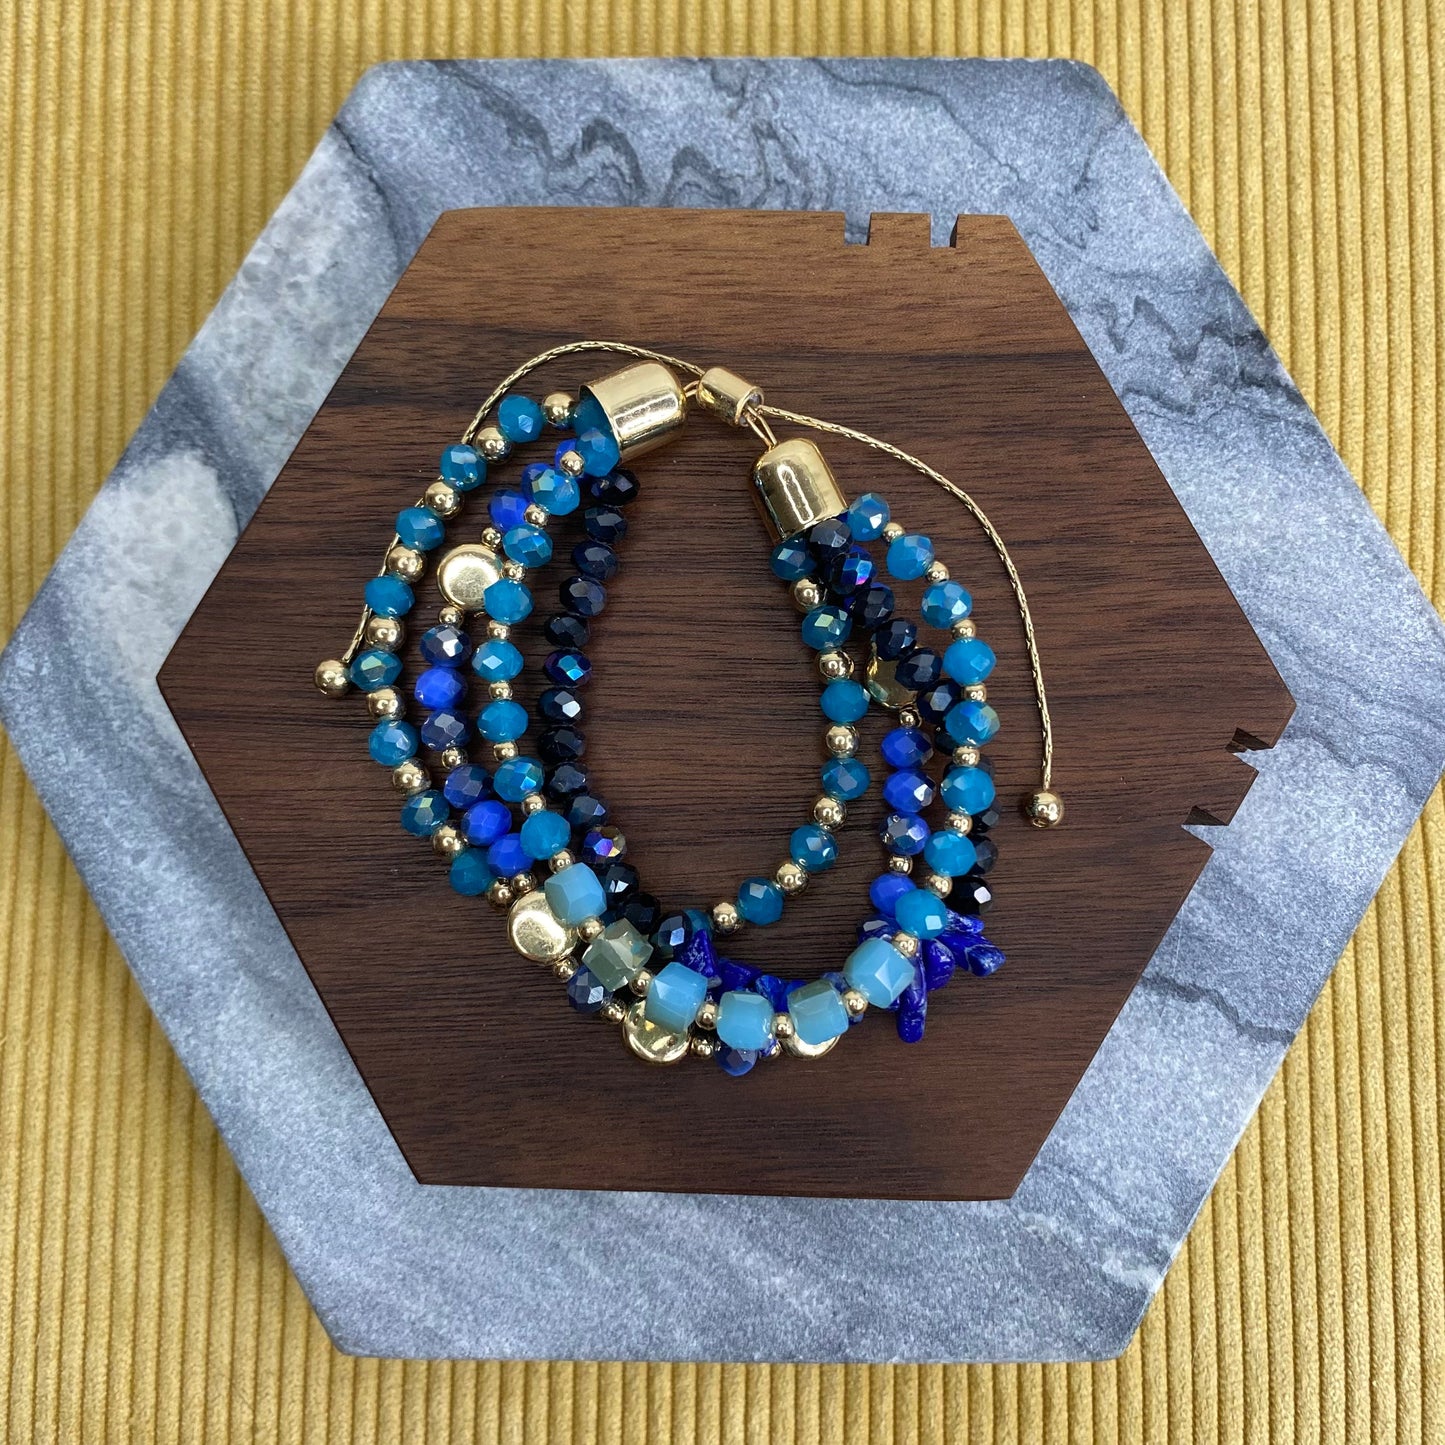 Bracelet - Adjustable Beads - Blue